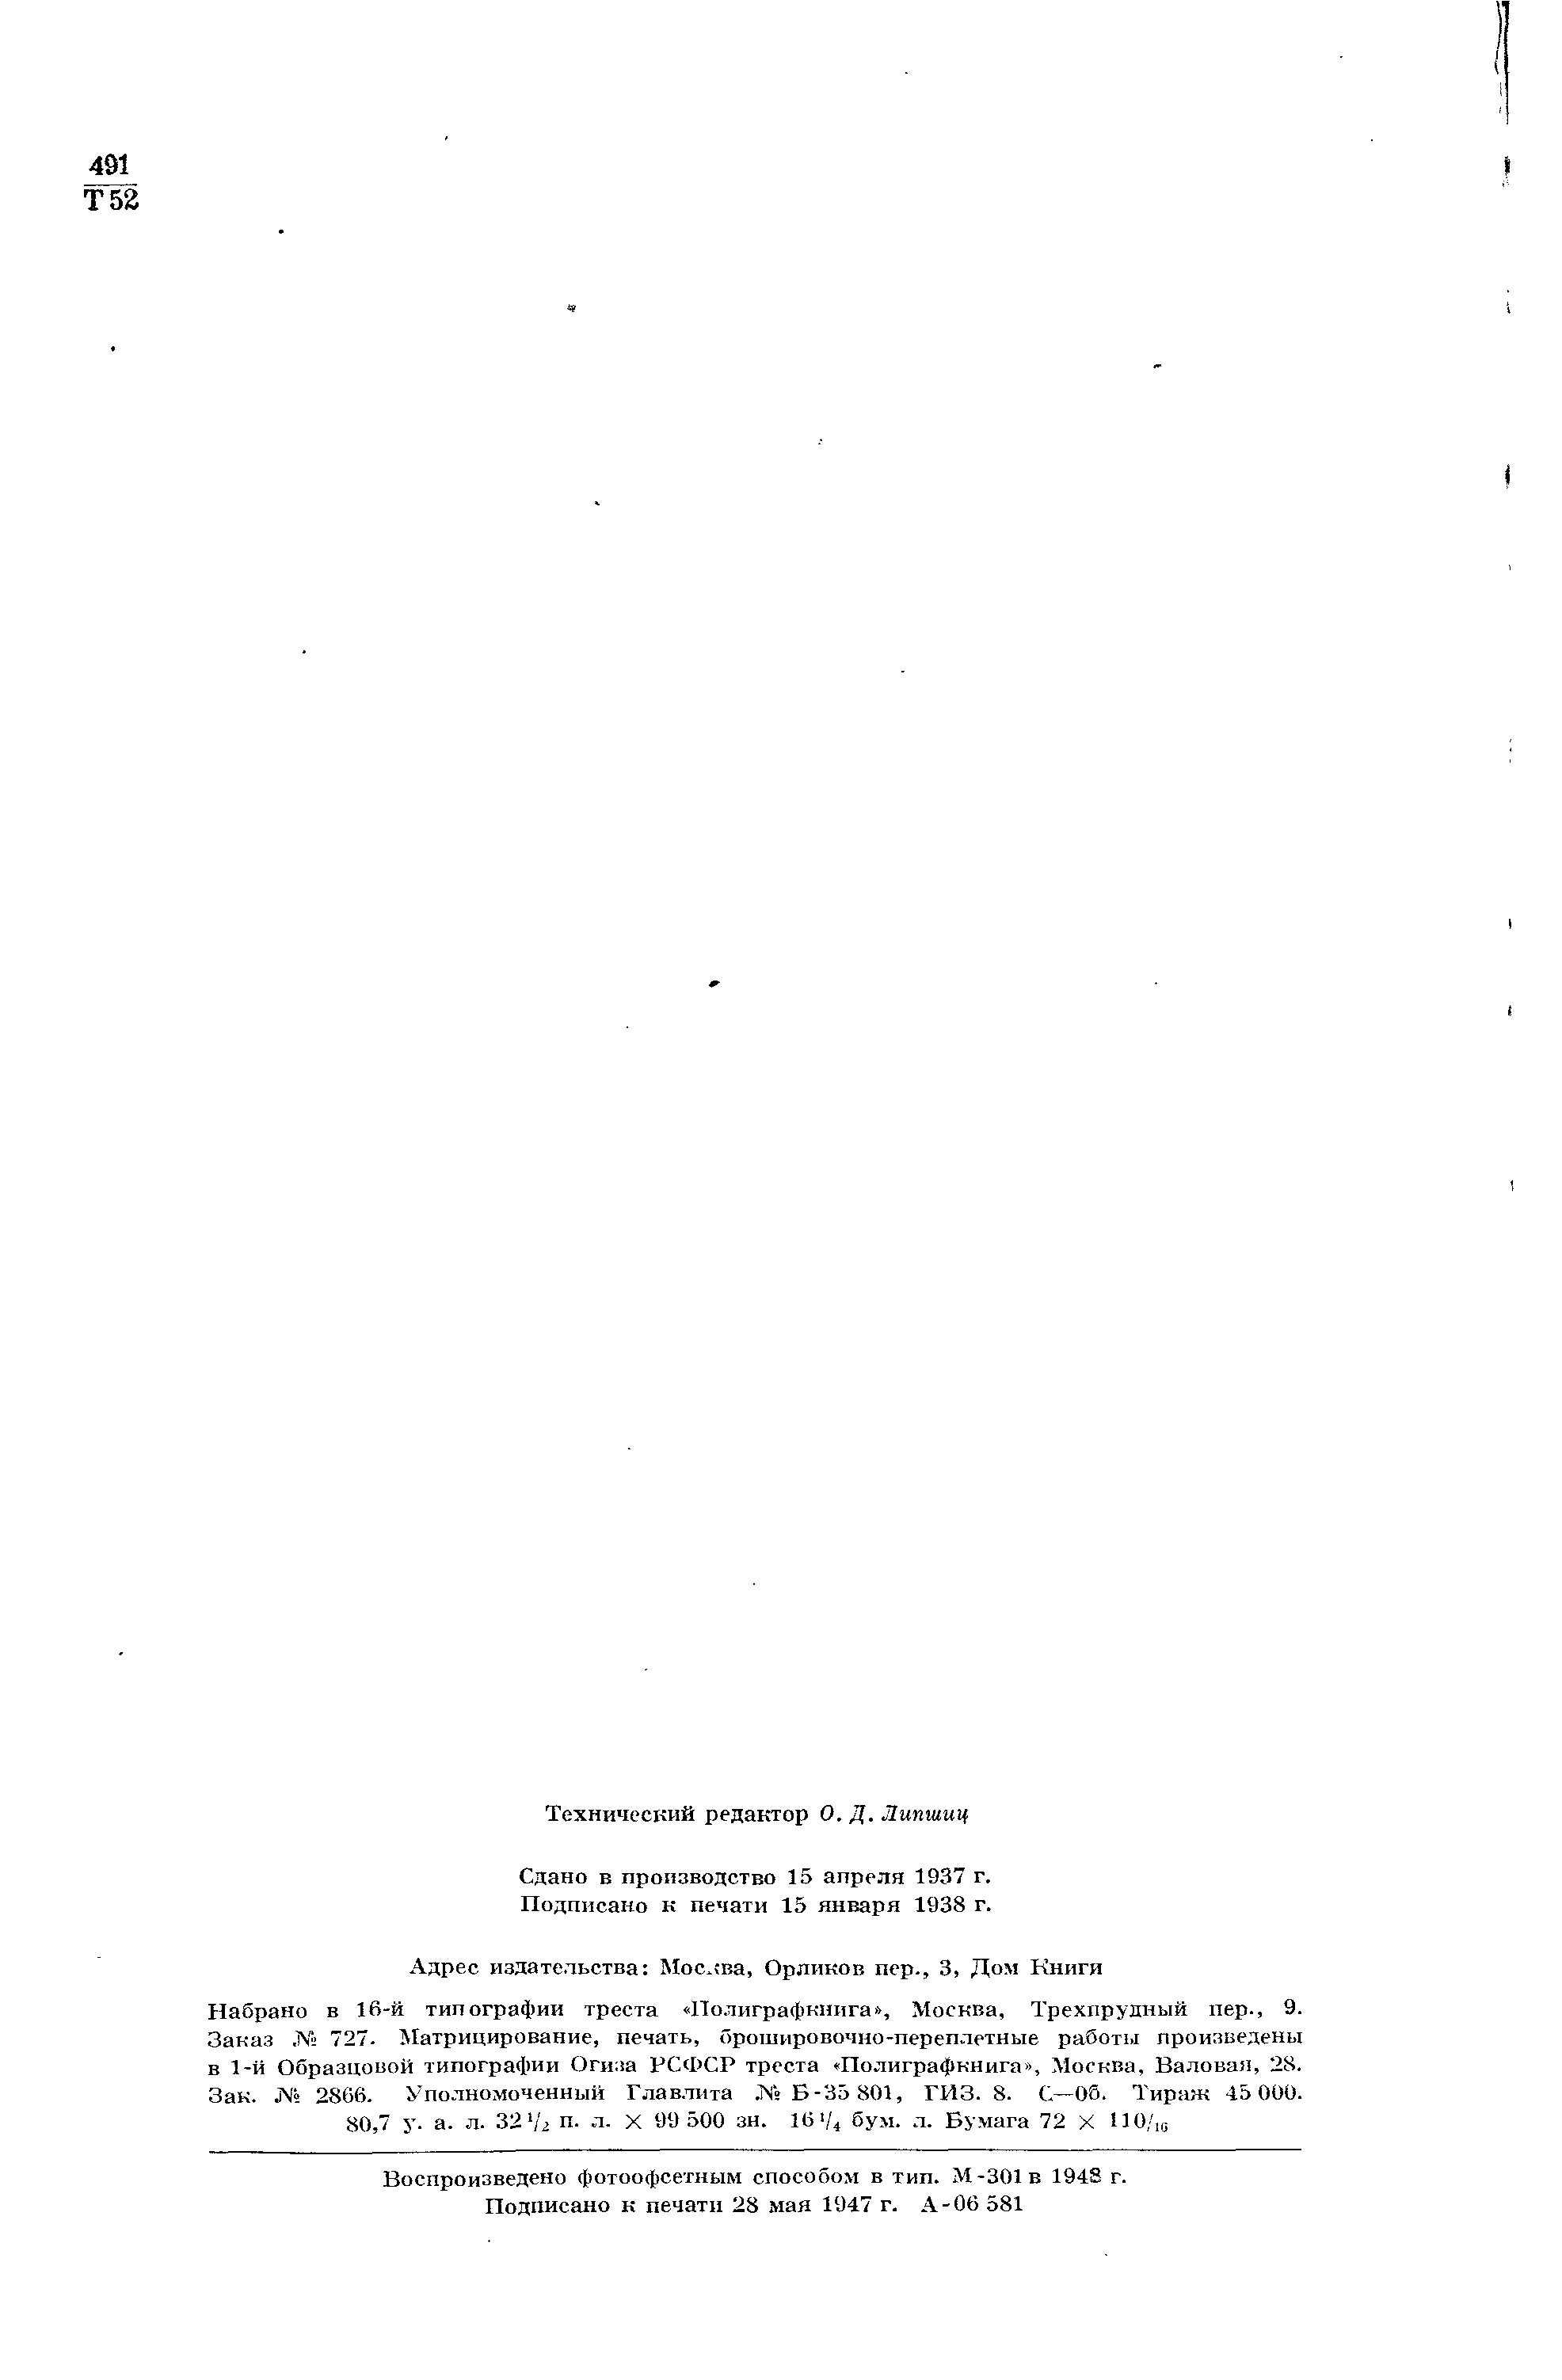 Фотокопия pdf / скан страницы 2 толкового словаря Ушакова (том 2)